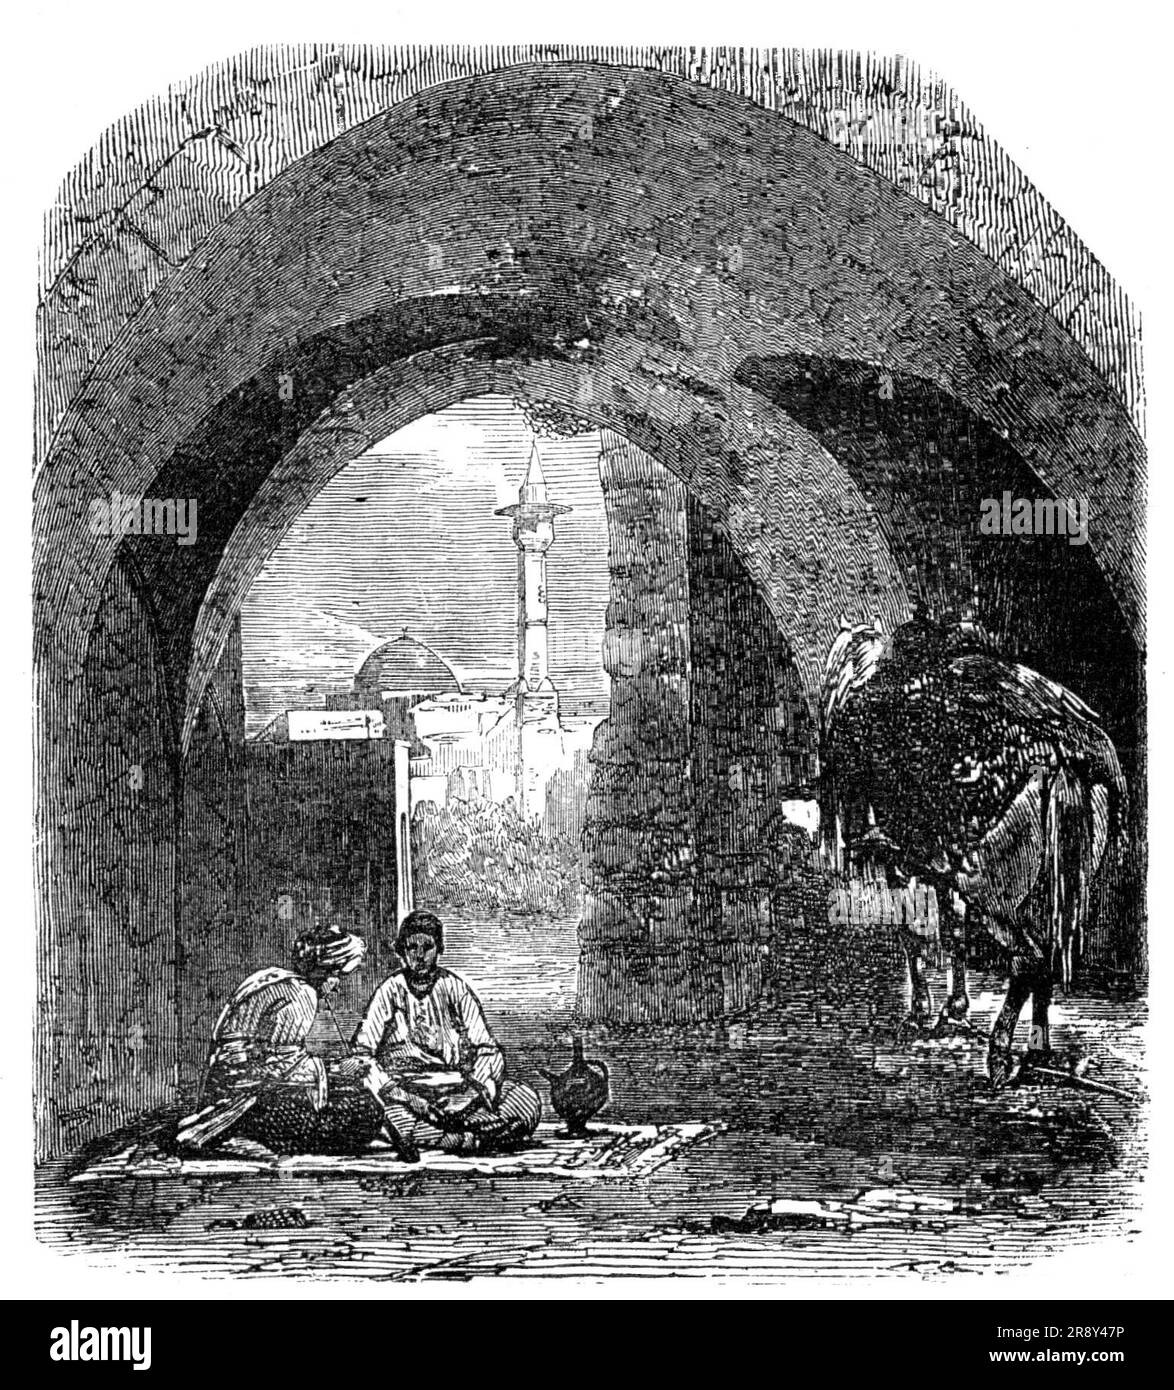 The Desert Route - Tor in den Wänden von Beyrout, 1857. Nahöstliche Szene. Unter dem Tor sitzt ein türkischer Gentleman, der auf dem untrennbaren Begleiter seiner Reisen sitzt, seinem Teppich, raucht seine Ruhestiftung und atmet mit Gusto den coolen zephyr ein, der sich immer und immer über seine ausgetrockneten Merkmale schleicht. In seiner Nähe sitzt ein junger bekannter, vielleicht ein Hummumgee oder Bademann, der einem der benachbarten Dampfbäder gehört. Er brachte ein Bleiglet oder ein Glas mit kaltem Wasser, aus dem sie abwechselnd ihre ausgetrockneten Lippen befeuchten und dann die Pfeife wieder einführen Stockfoto